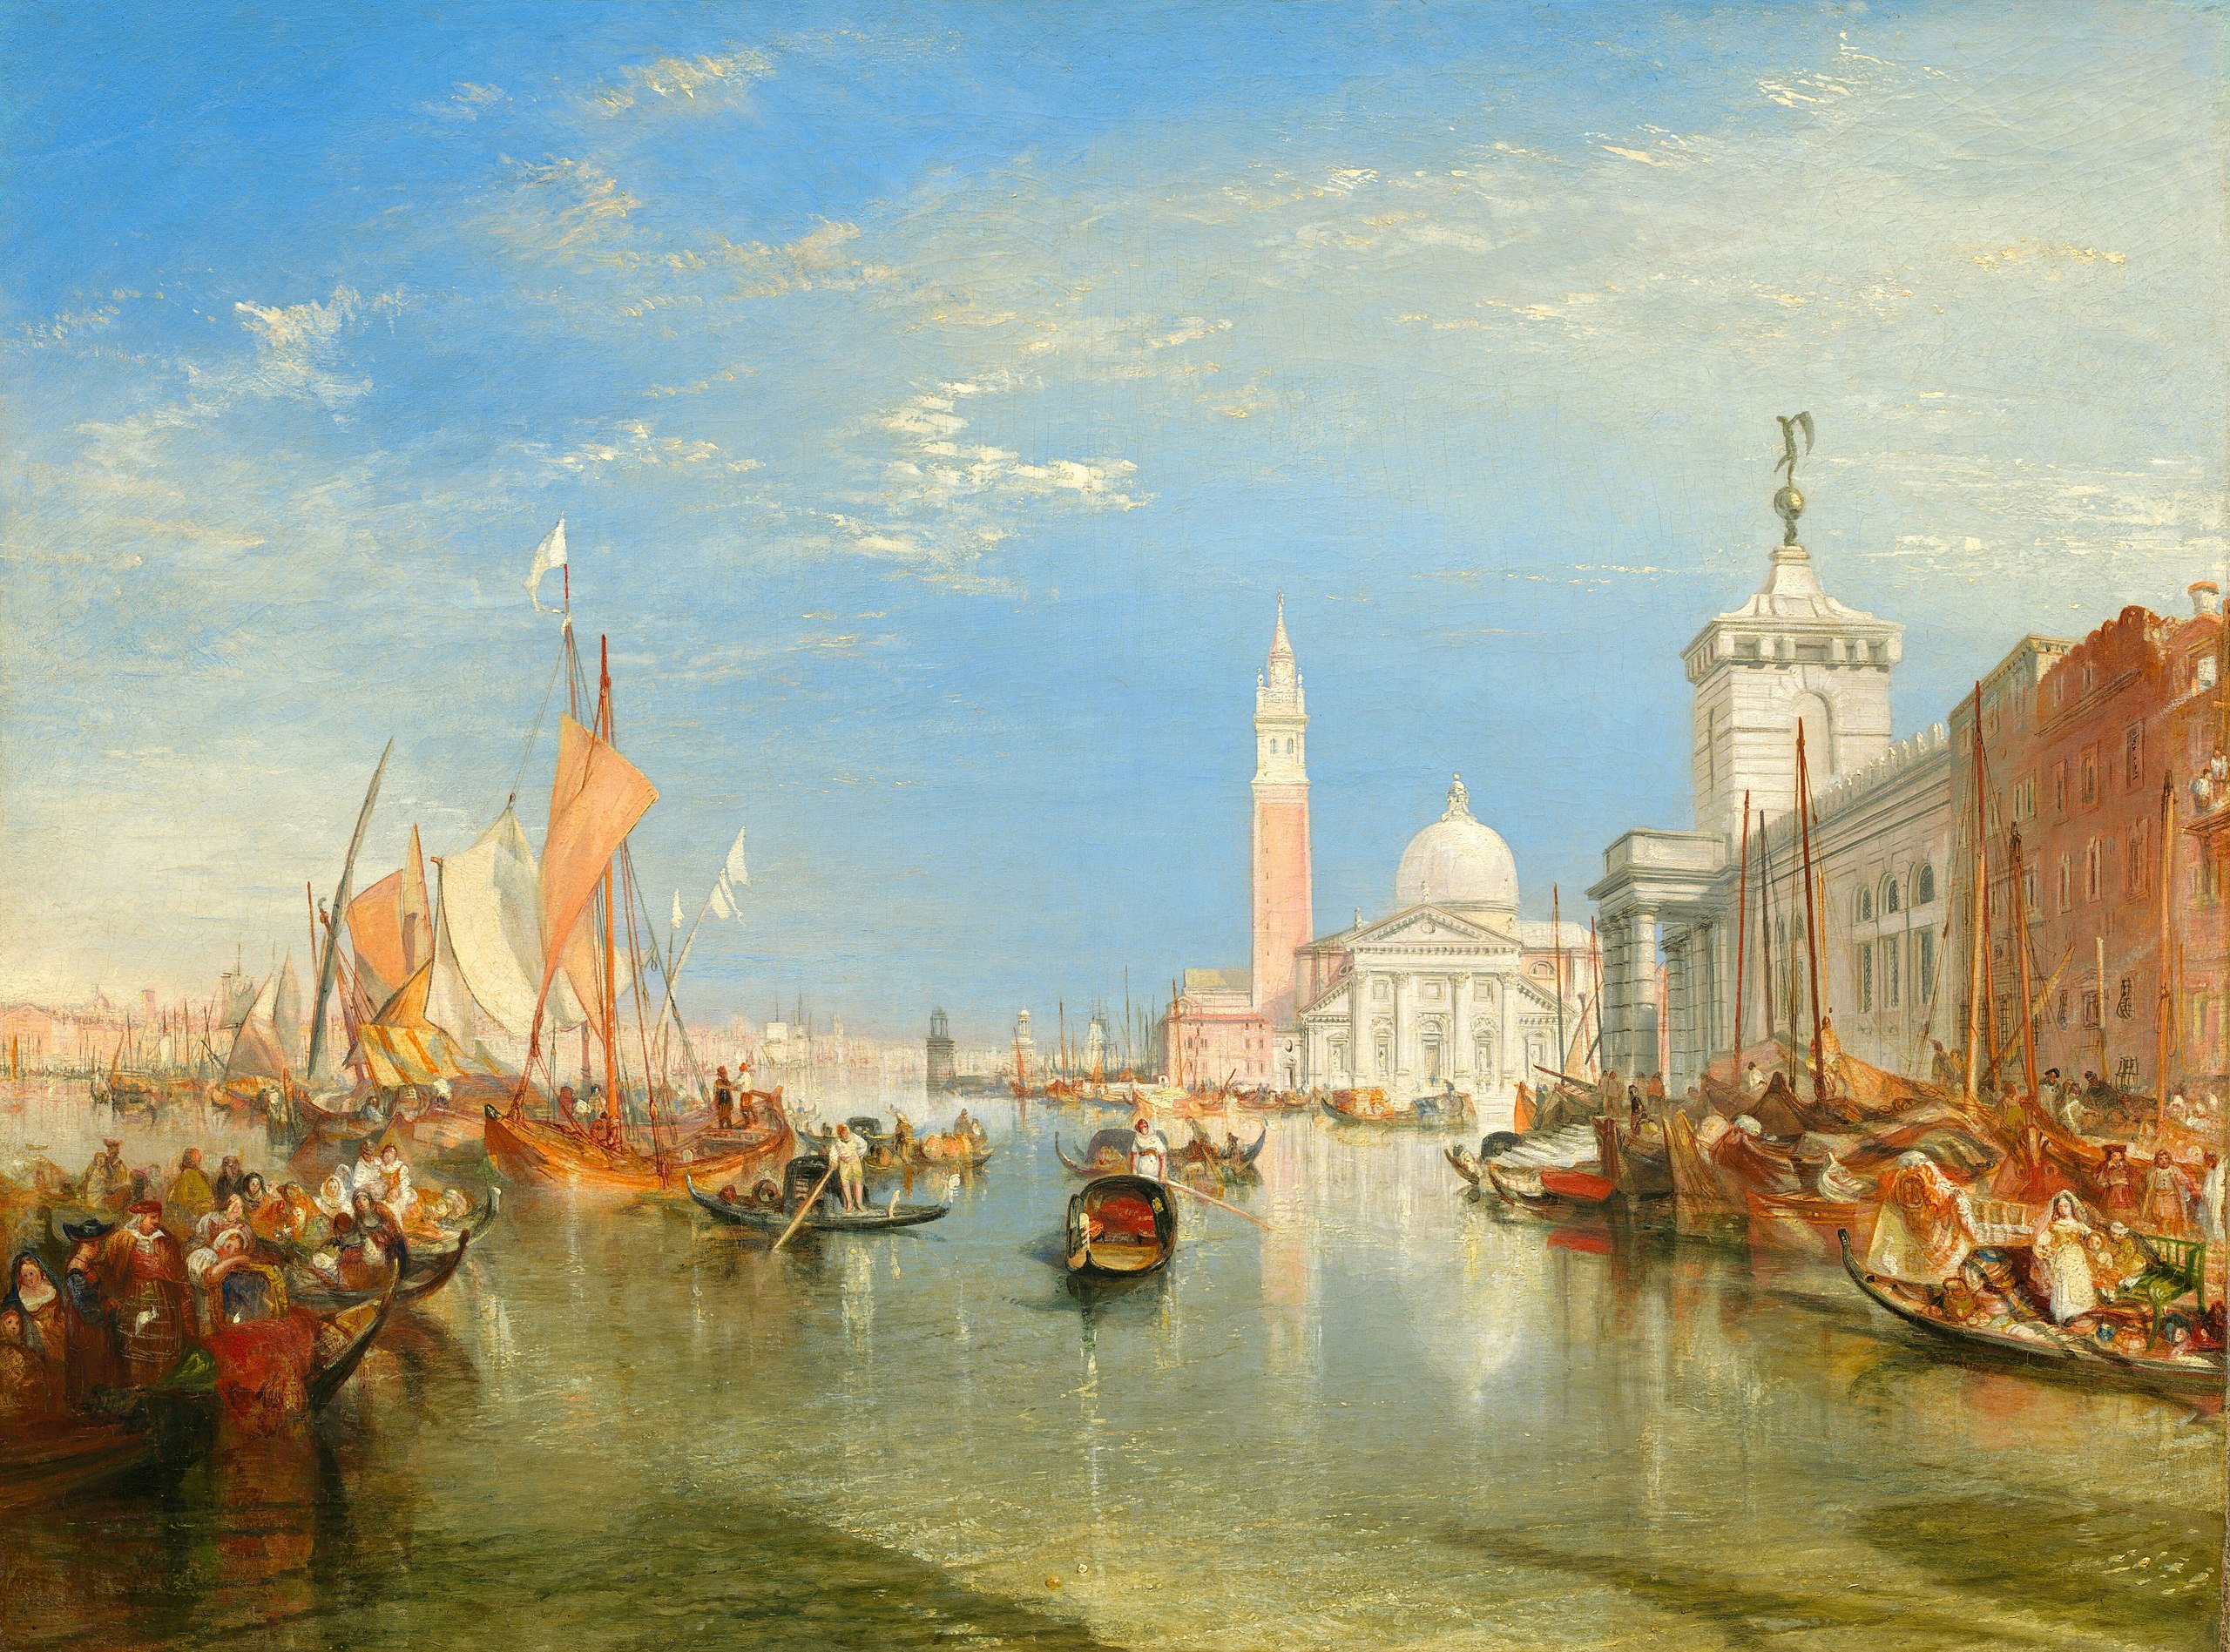 베니스: 세관 건물과 산 조르지오 마조레 성당(Venice: The Dogana and San Giorgio Maggiore) by Joseph Mallord William Turner - 1834년 - 91.5 x 122 cm 